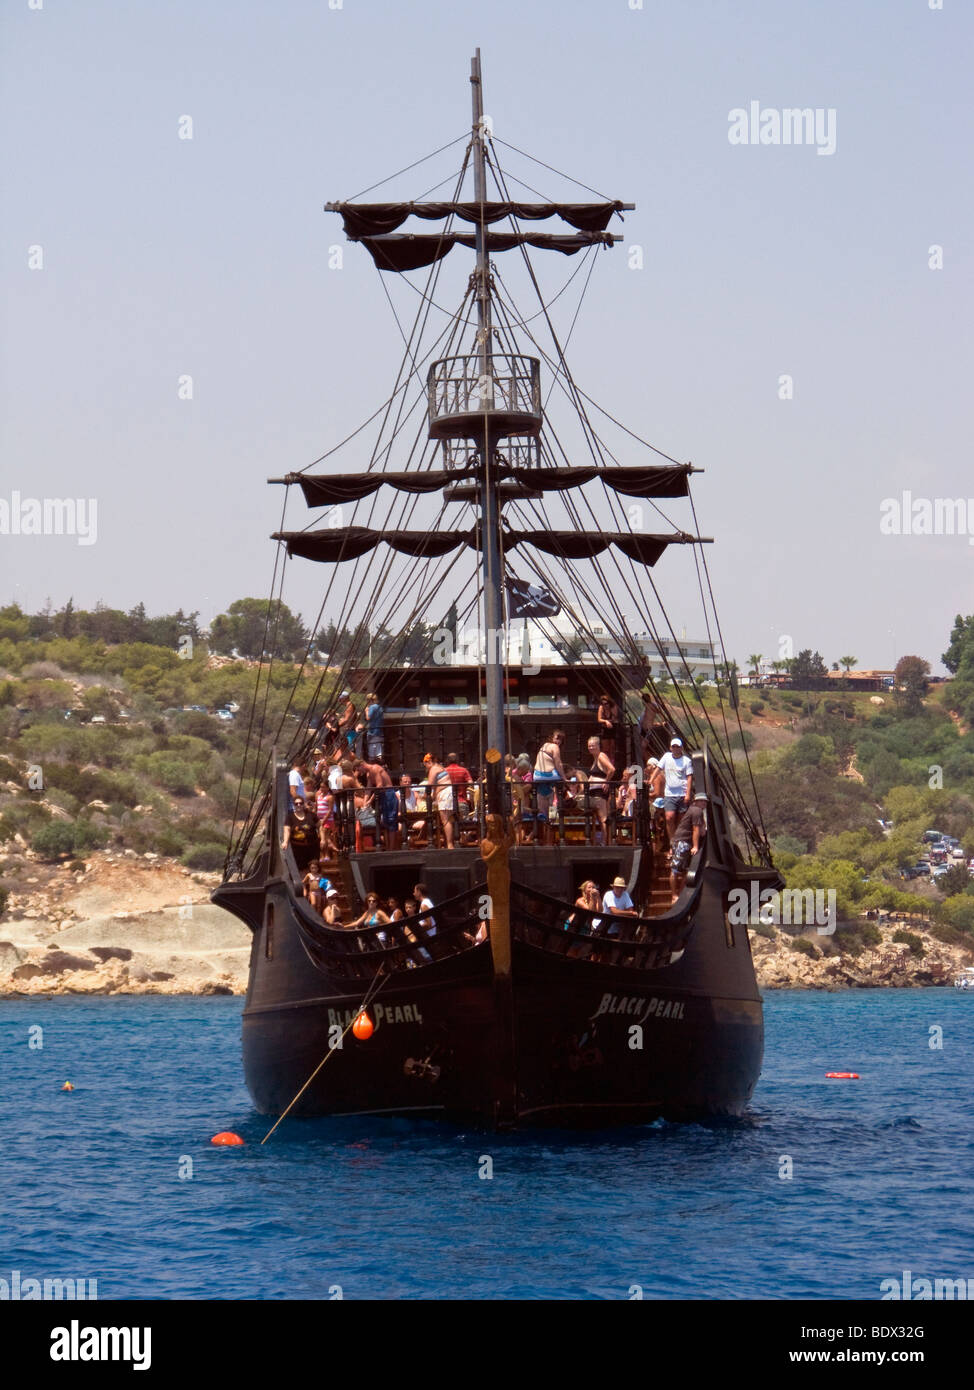 Le Black Pearl, un navire de croisière de jour touristique à Ayia Napa, Chypre. Banque D'Images